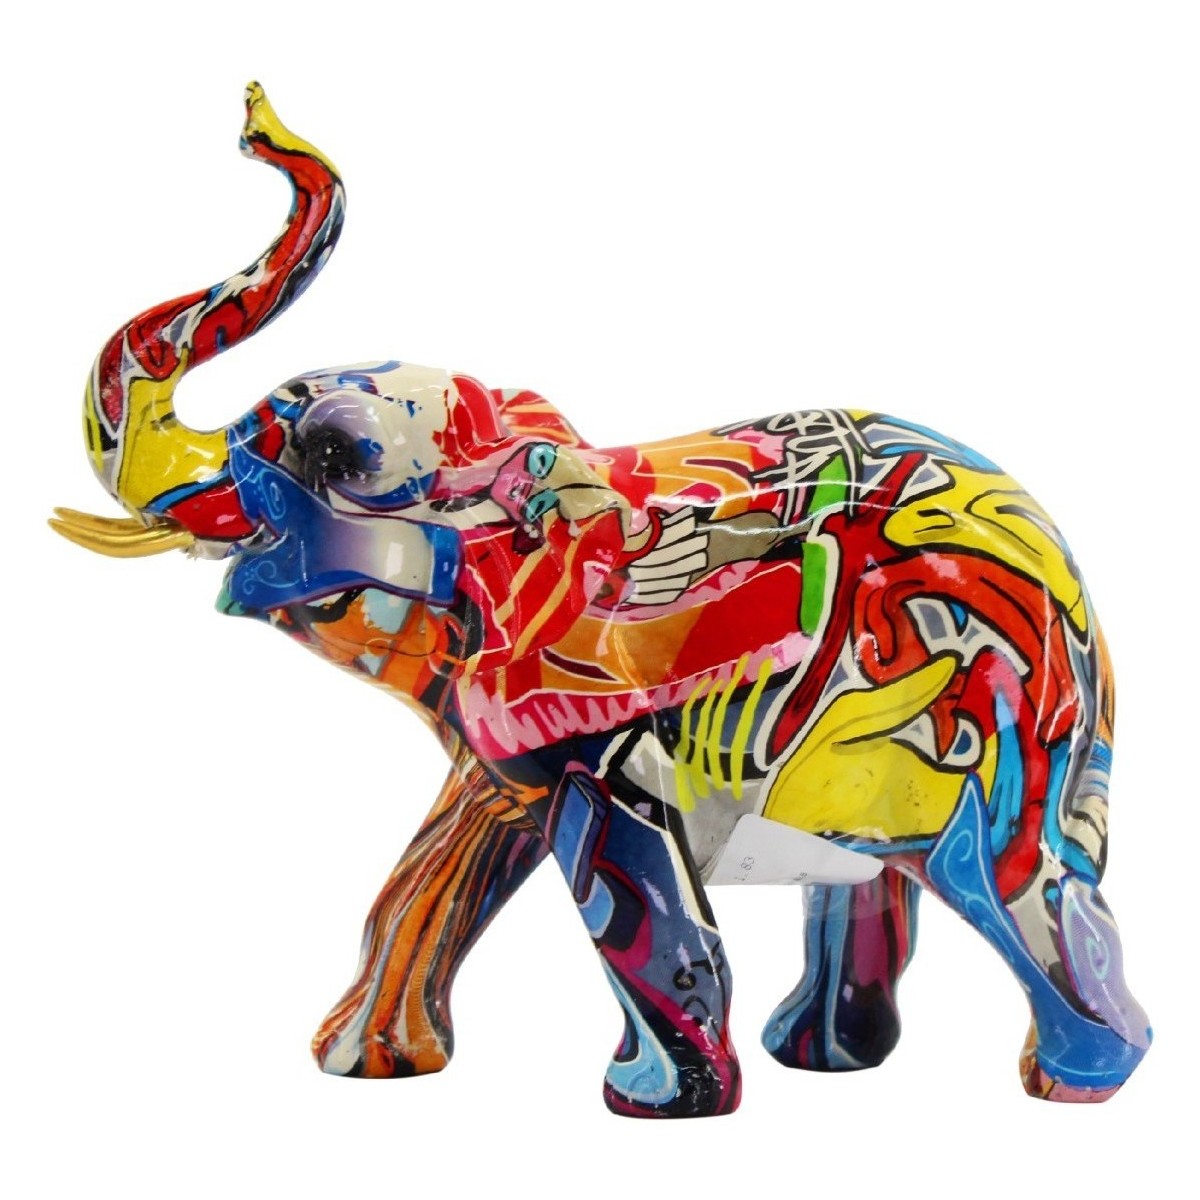 Maison & Déco Veuillez choisir votre genre Signes Grimalt Figure D'Éléphant Multicolore